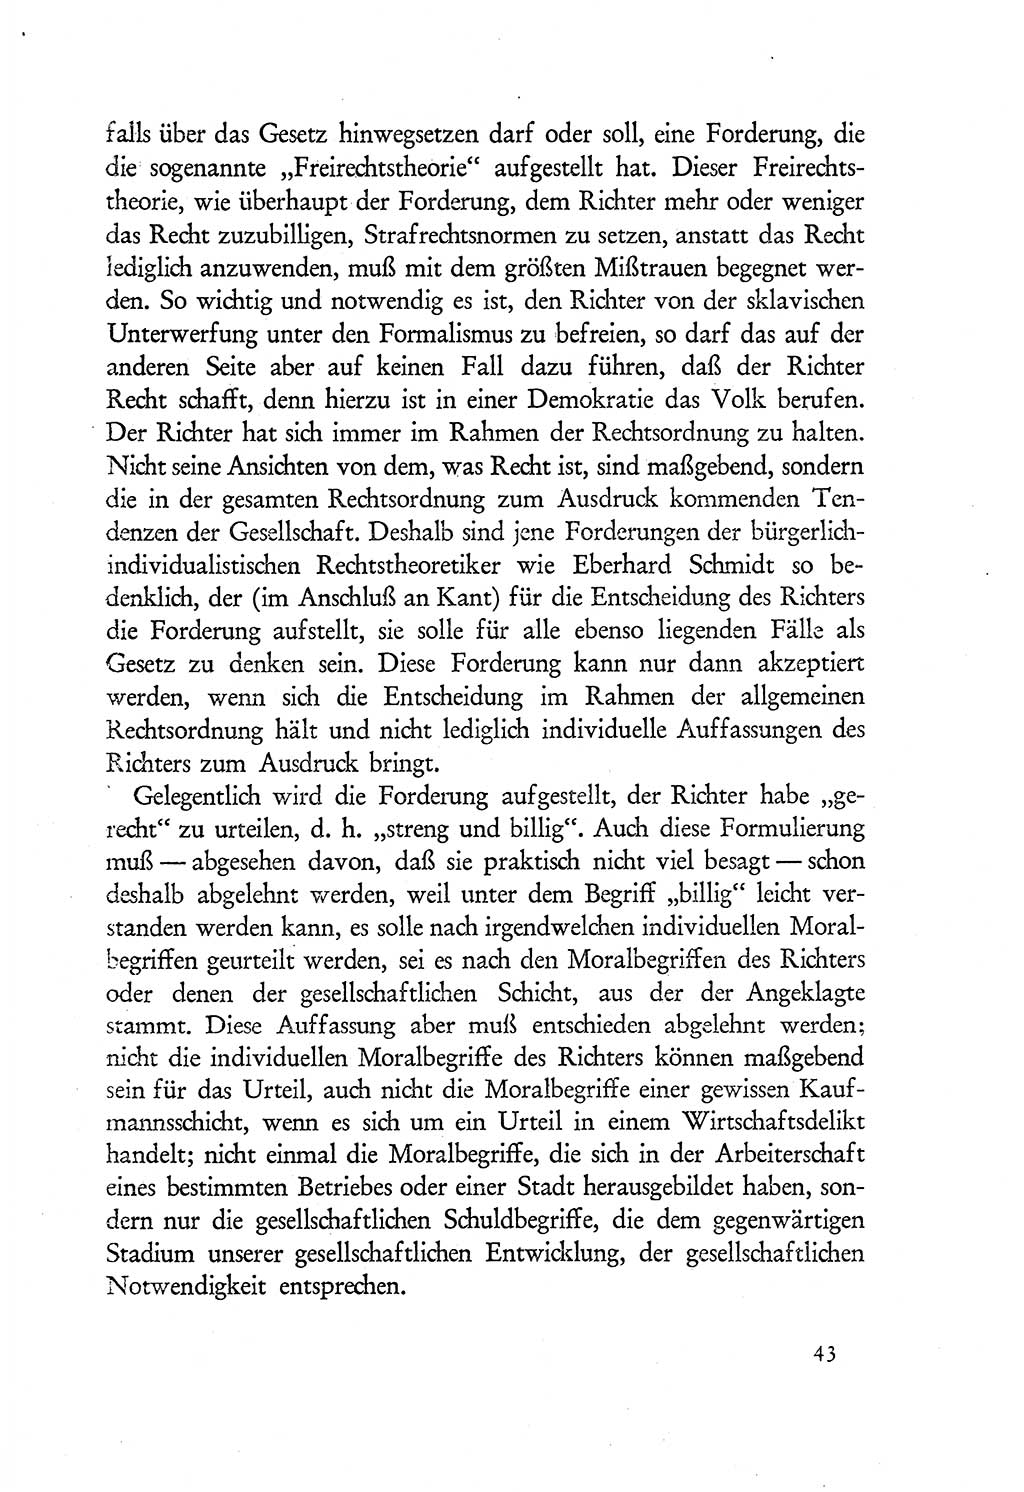 Probleme eines demokratischen Strafrechts [Sowjetische Besatzungszone (SBZ) Deutschlands] 1949, Seite 43 (Probl. Strafr. SBZ Dtl. 1949, S. 43)